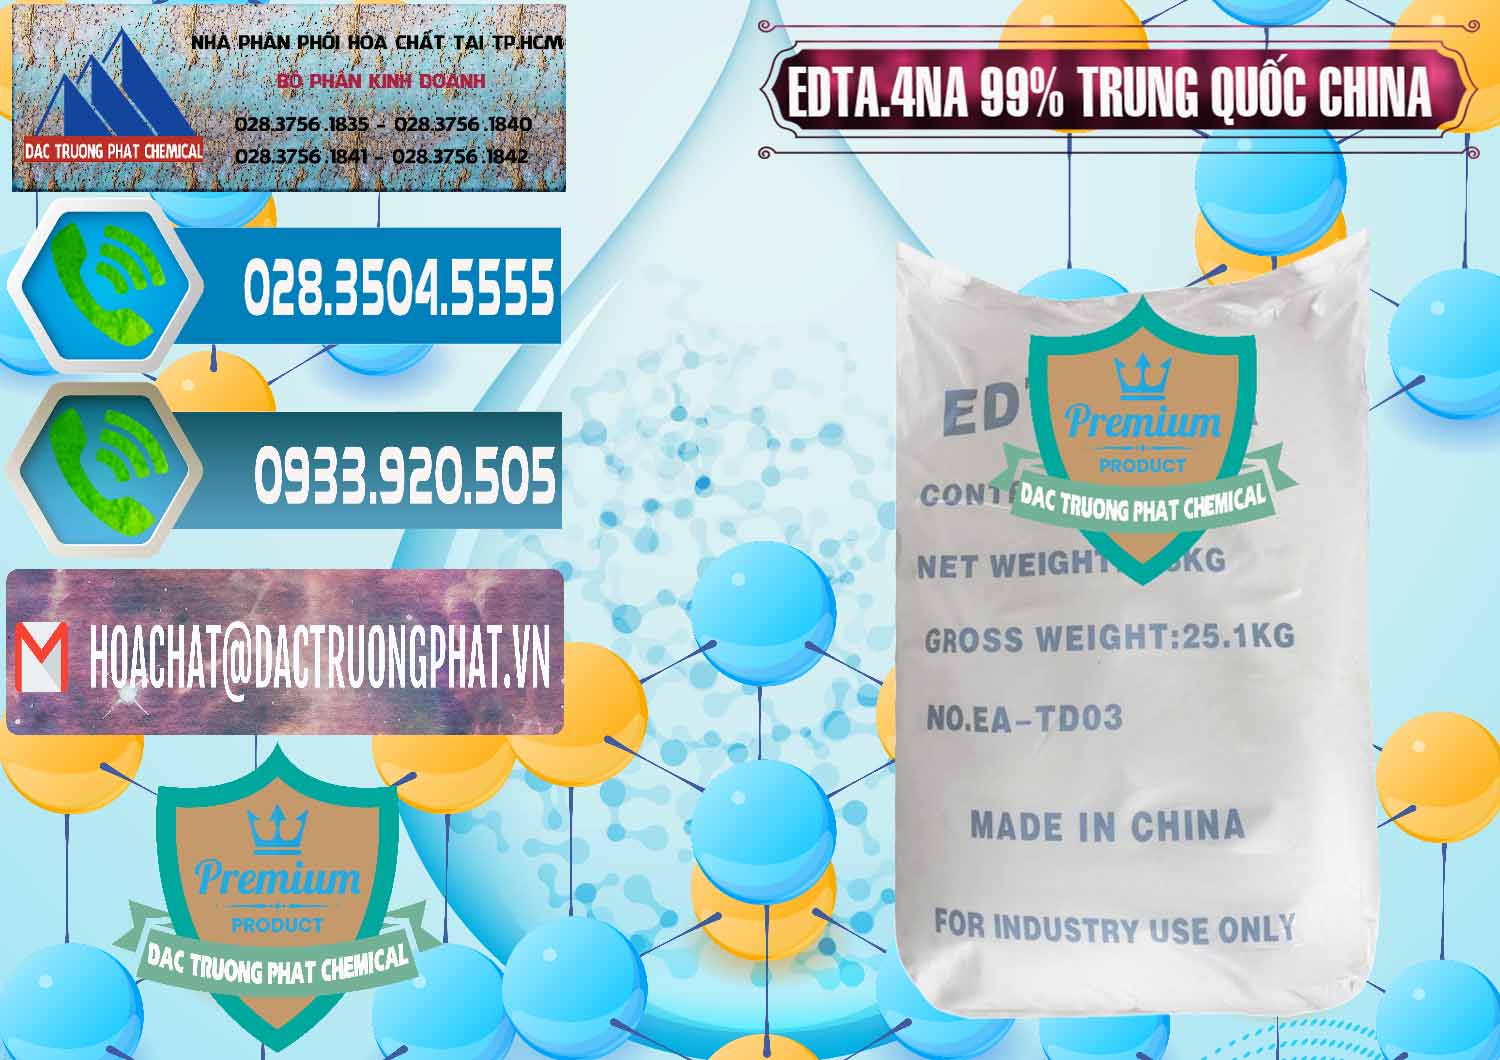 Công ty chuyên nhập khẩu & bán EDTA.4NA - EDTA Muối 99% Trung Quốc China - 0292 - Cty chuyên kinh doanh - cung cấp hóa chất tại TP.HCM - congtyhoachat.net